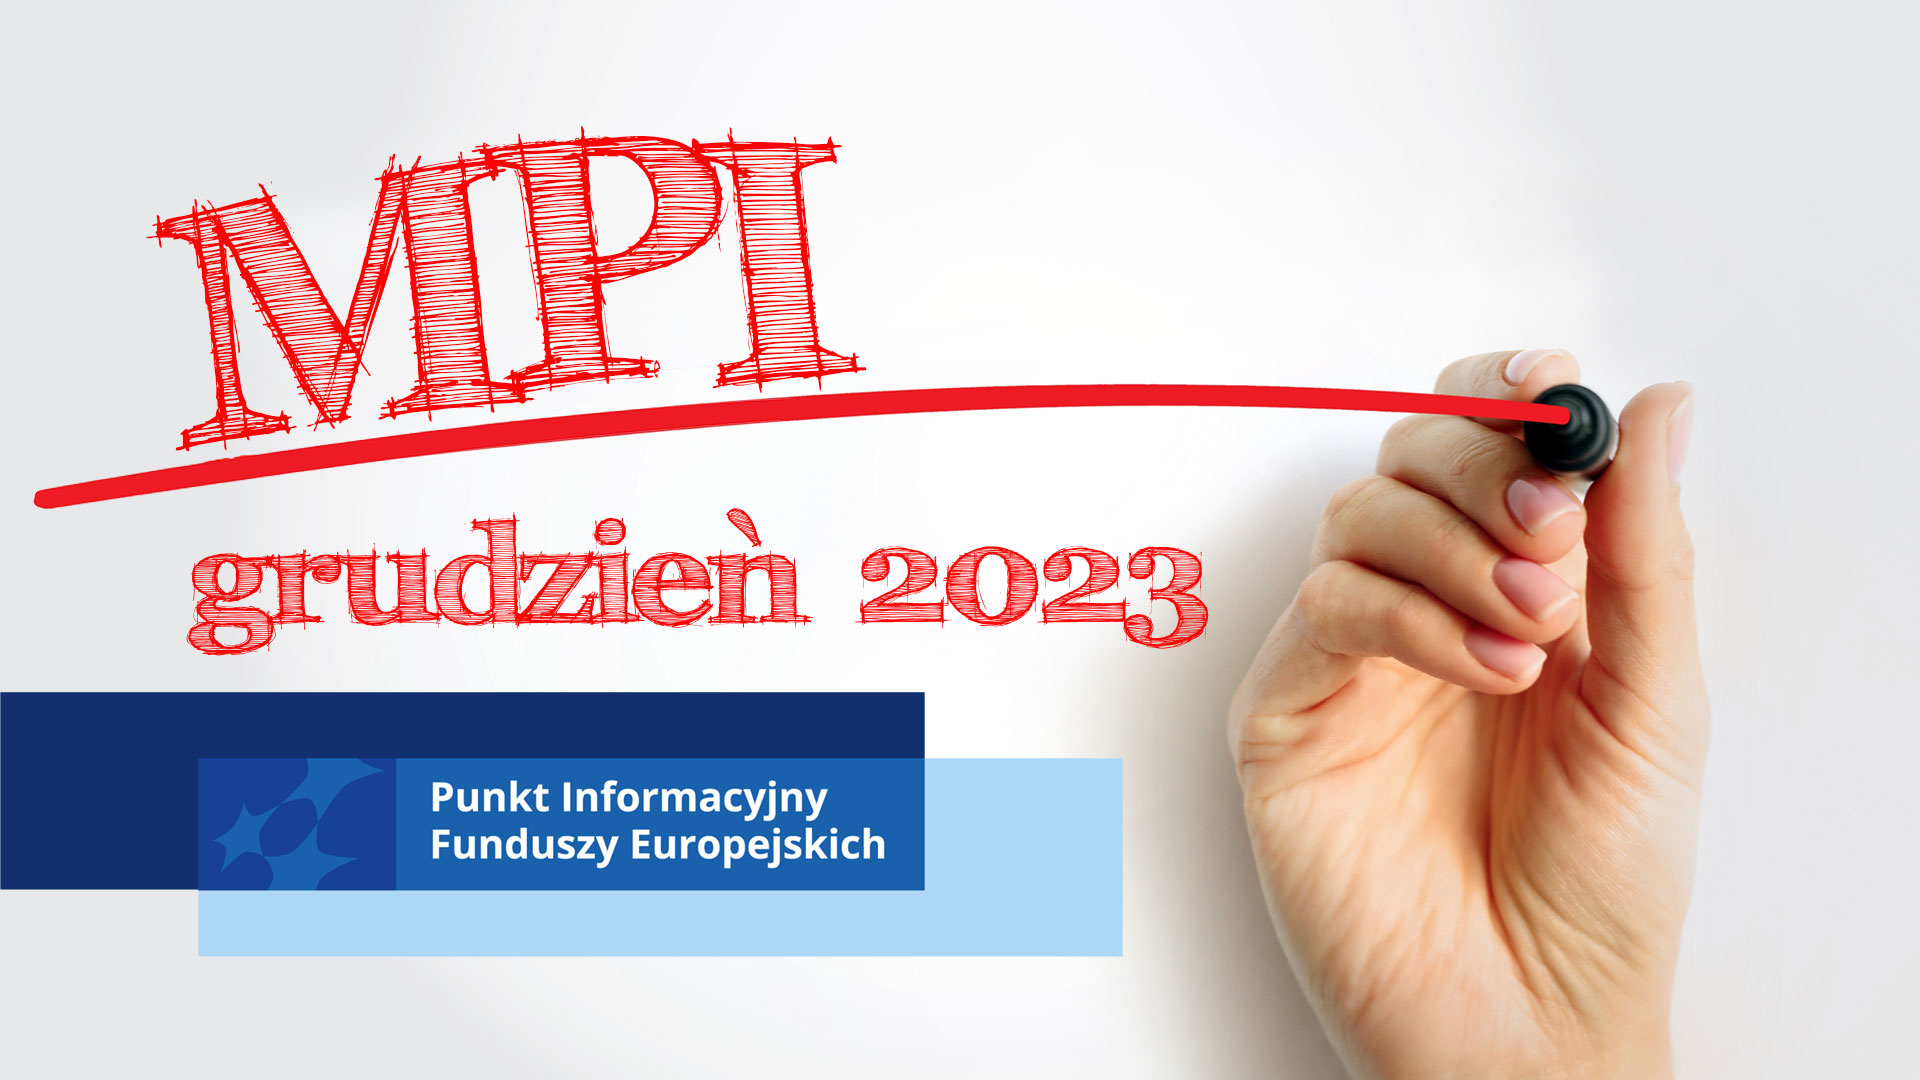 Obrazek przedstawiający rękę z flamastrem kreśląca czerwoną linię. Nad linią napis MPI, pod listą grudzień 2023, pod którym prostokąty z motywem marki Fundusze Europejskie i napisem Punkt Informacyjny Funduszy Europejskich